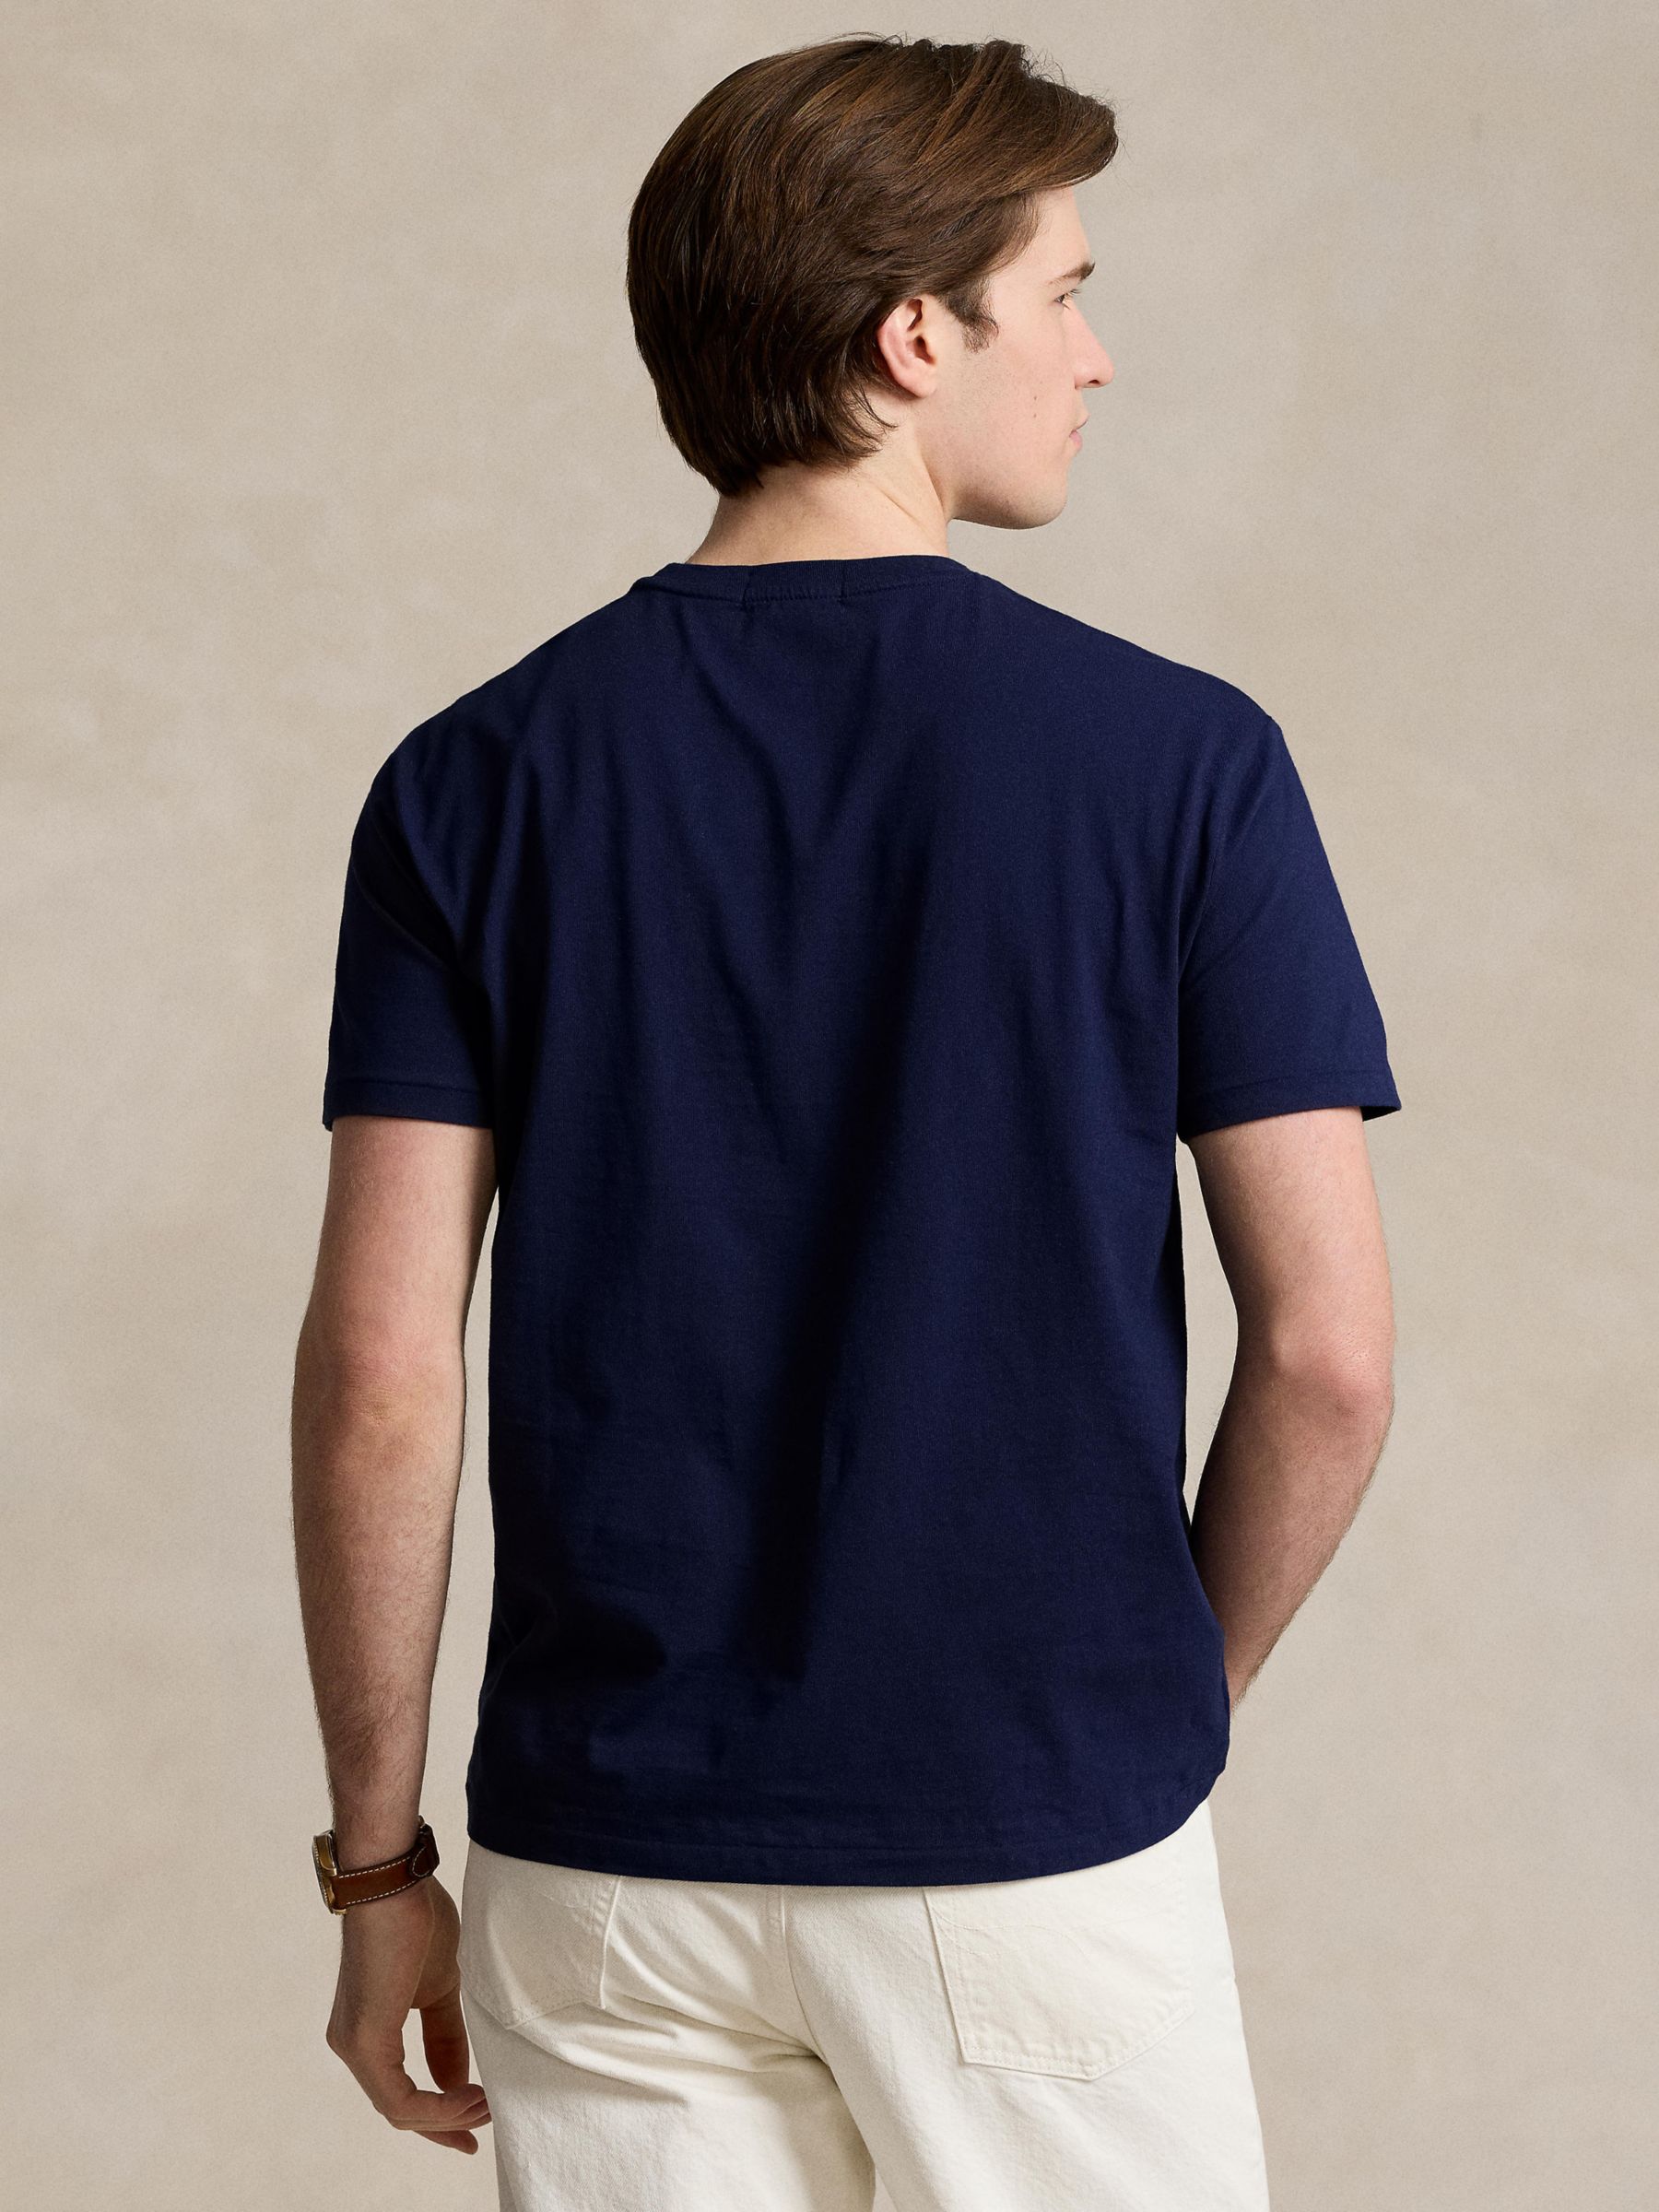 Ralph Lauren Classic Fit Polo Bear Jersey T-Shirt, Navy, S